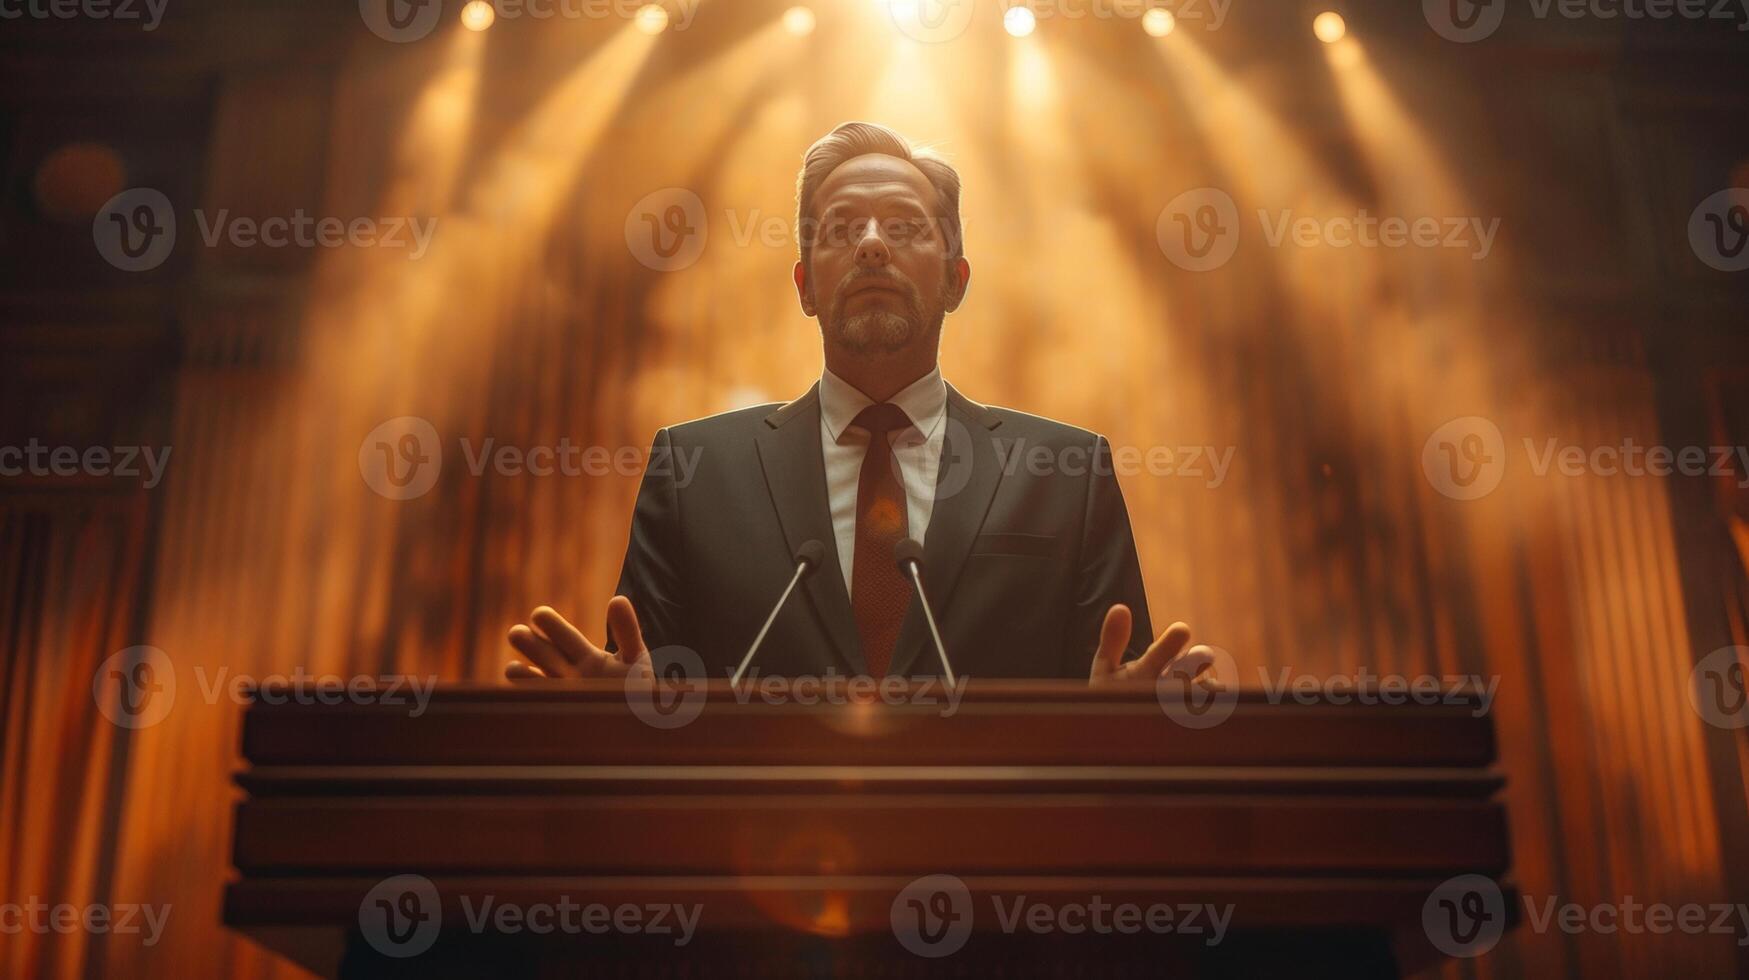 bien habillé homme livrer discours à podium dans salle photo